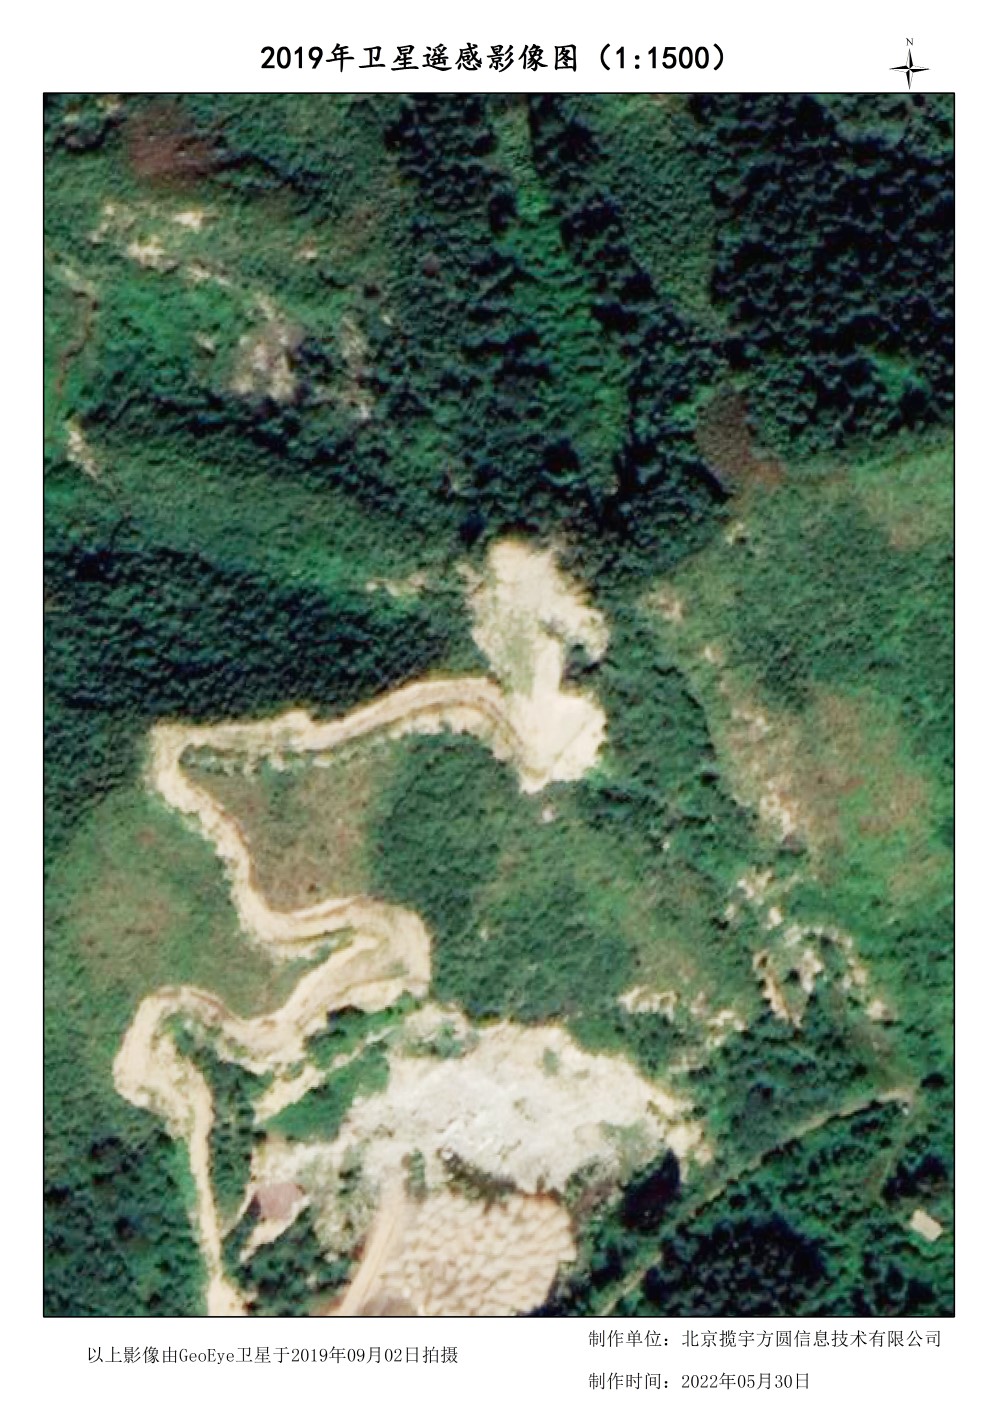 美国DG卫星公司0.5米分辨率GE卫星矿区样例图